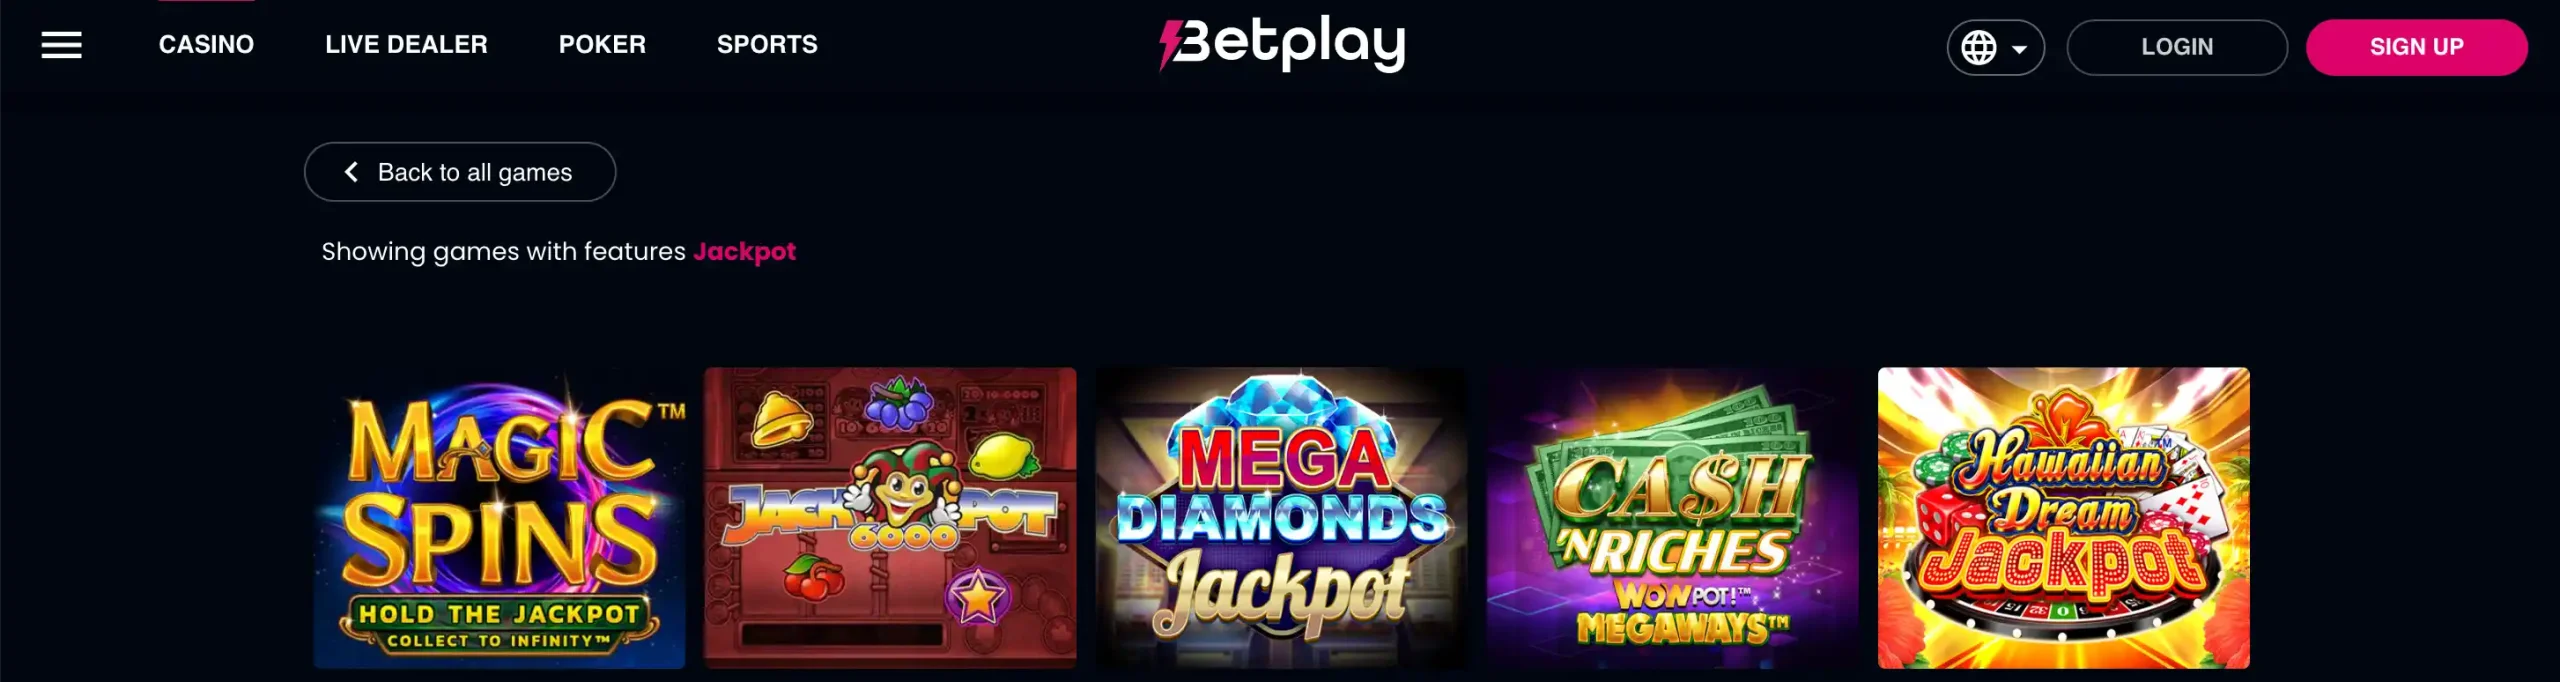 Games at BetPlay